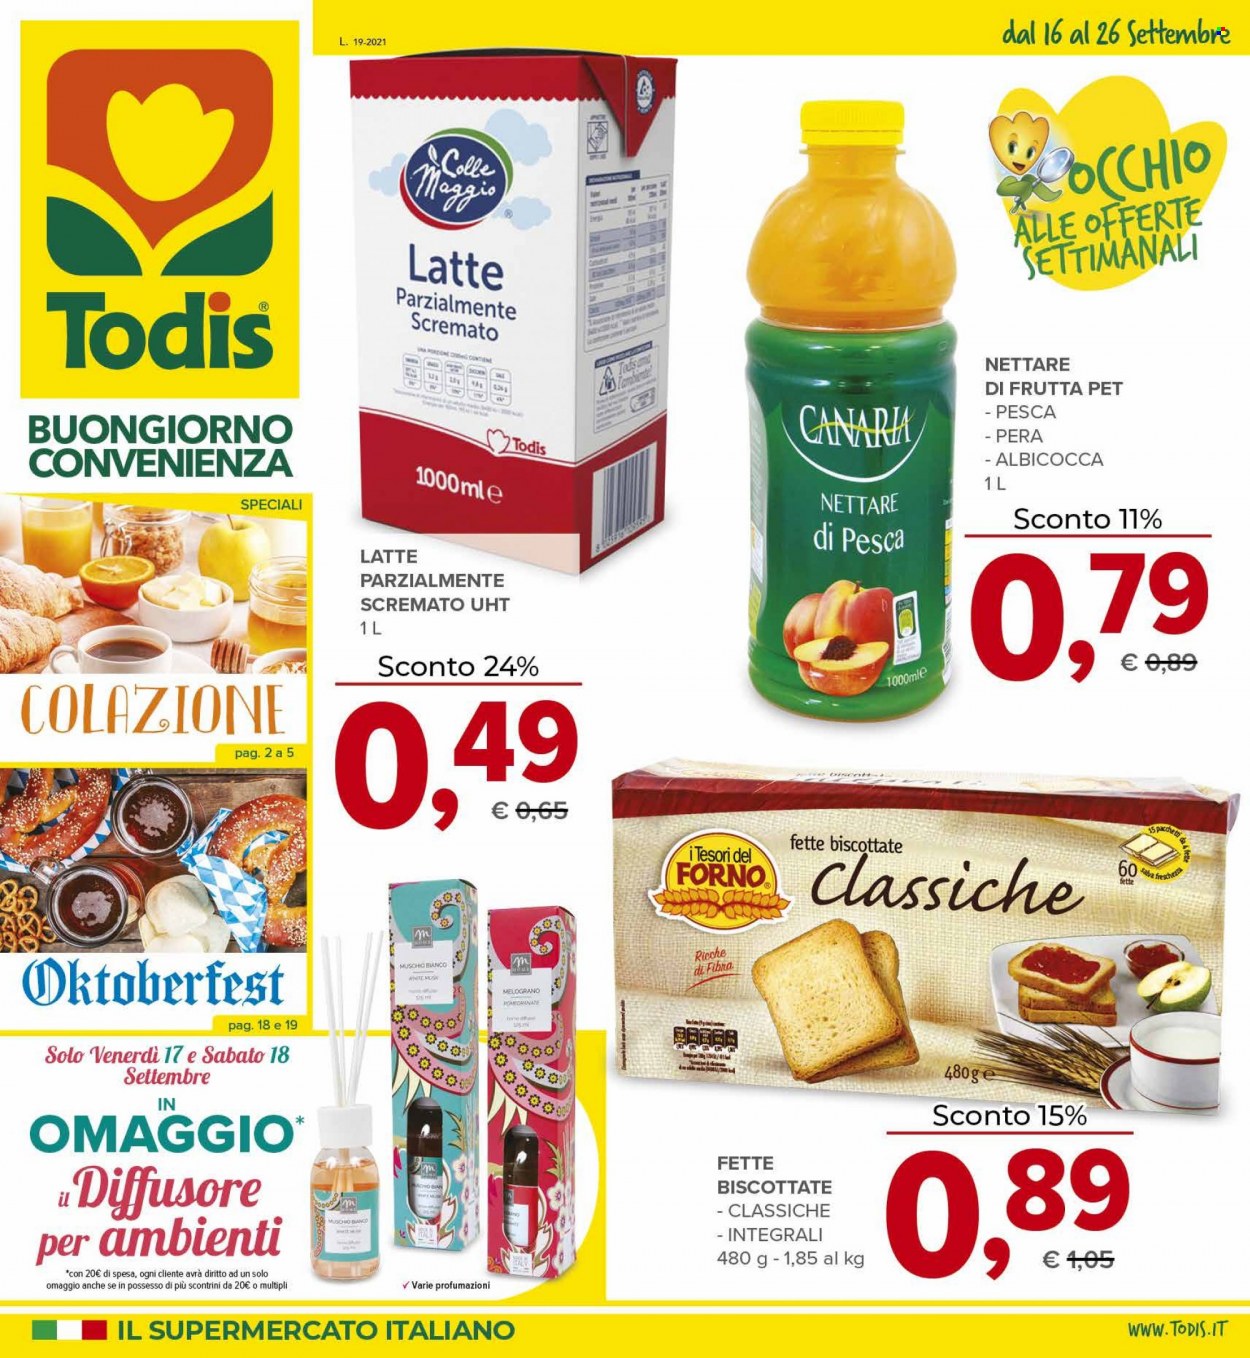 thumbnail - Volantino Todis - 16/9/2021 - 26/9/2021 - Prodotti in offerta - fette biscottate, latte, nettare, diffusore, forno. Pagina 1.